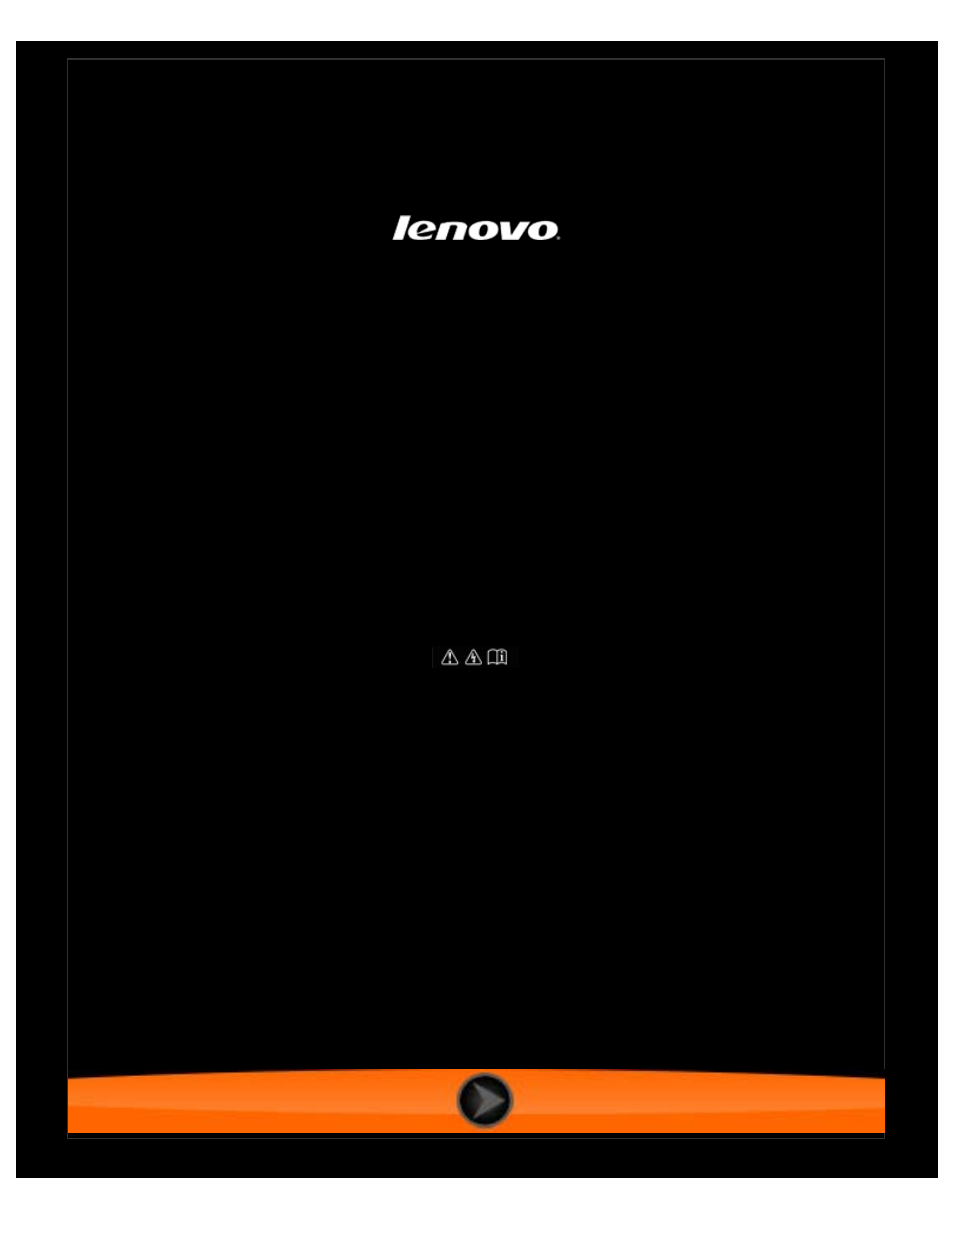 Lenovo A7 30 Tablet Manuel d'utilisation | Pages: 32